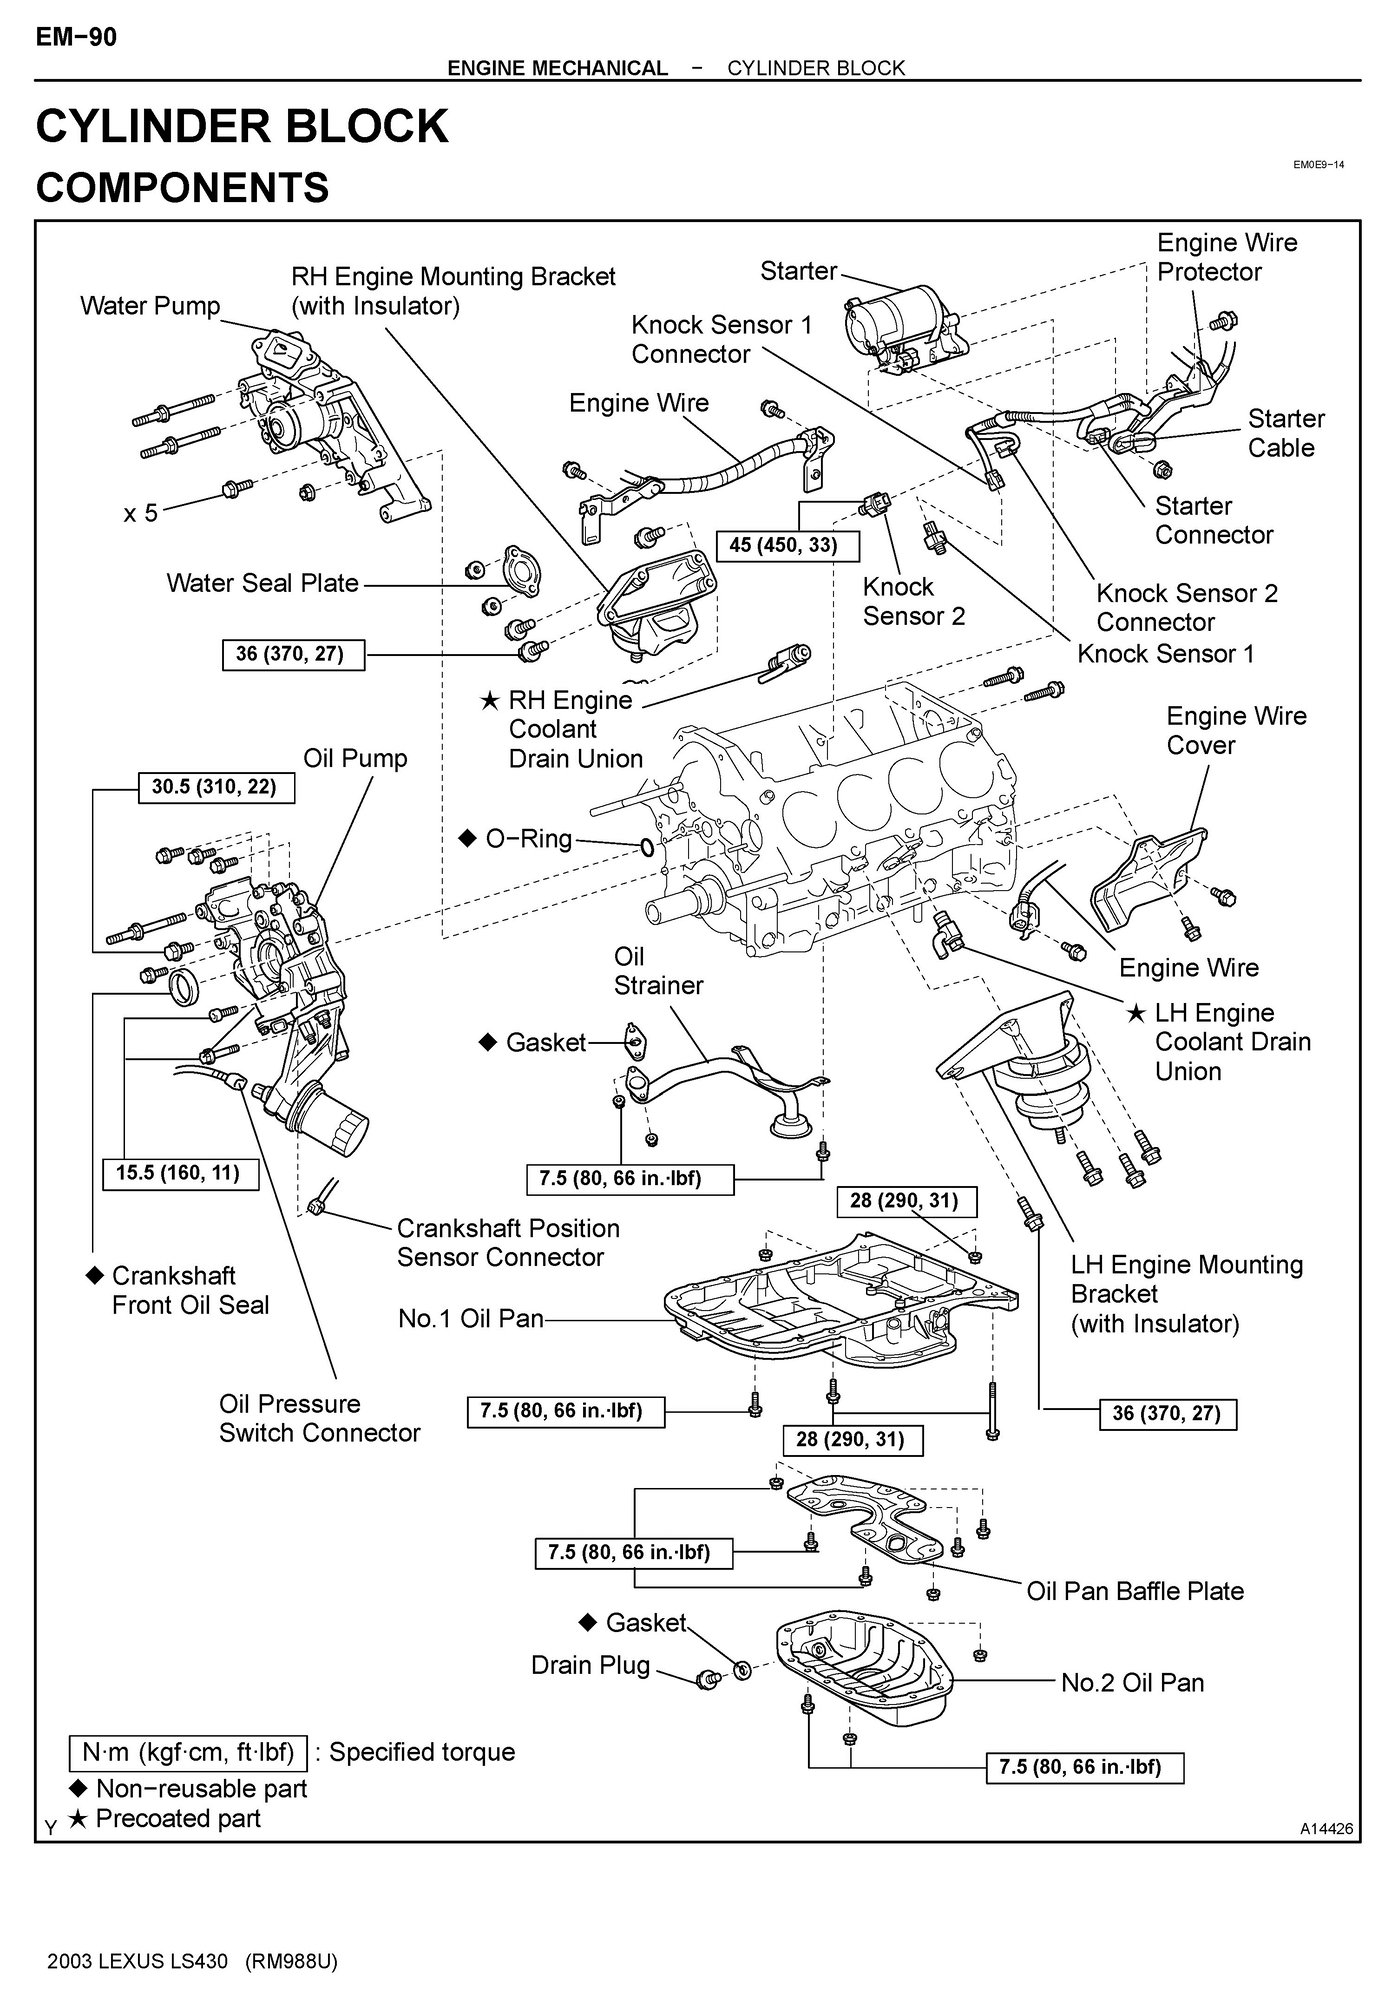 Wiring Diagram PDF: 2002 Lexus Gs300 Engine Diagram